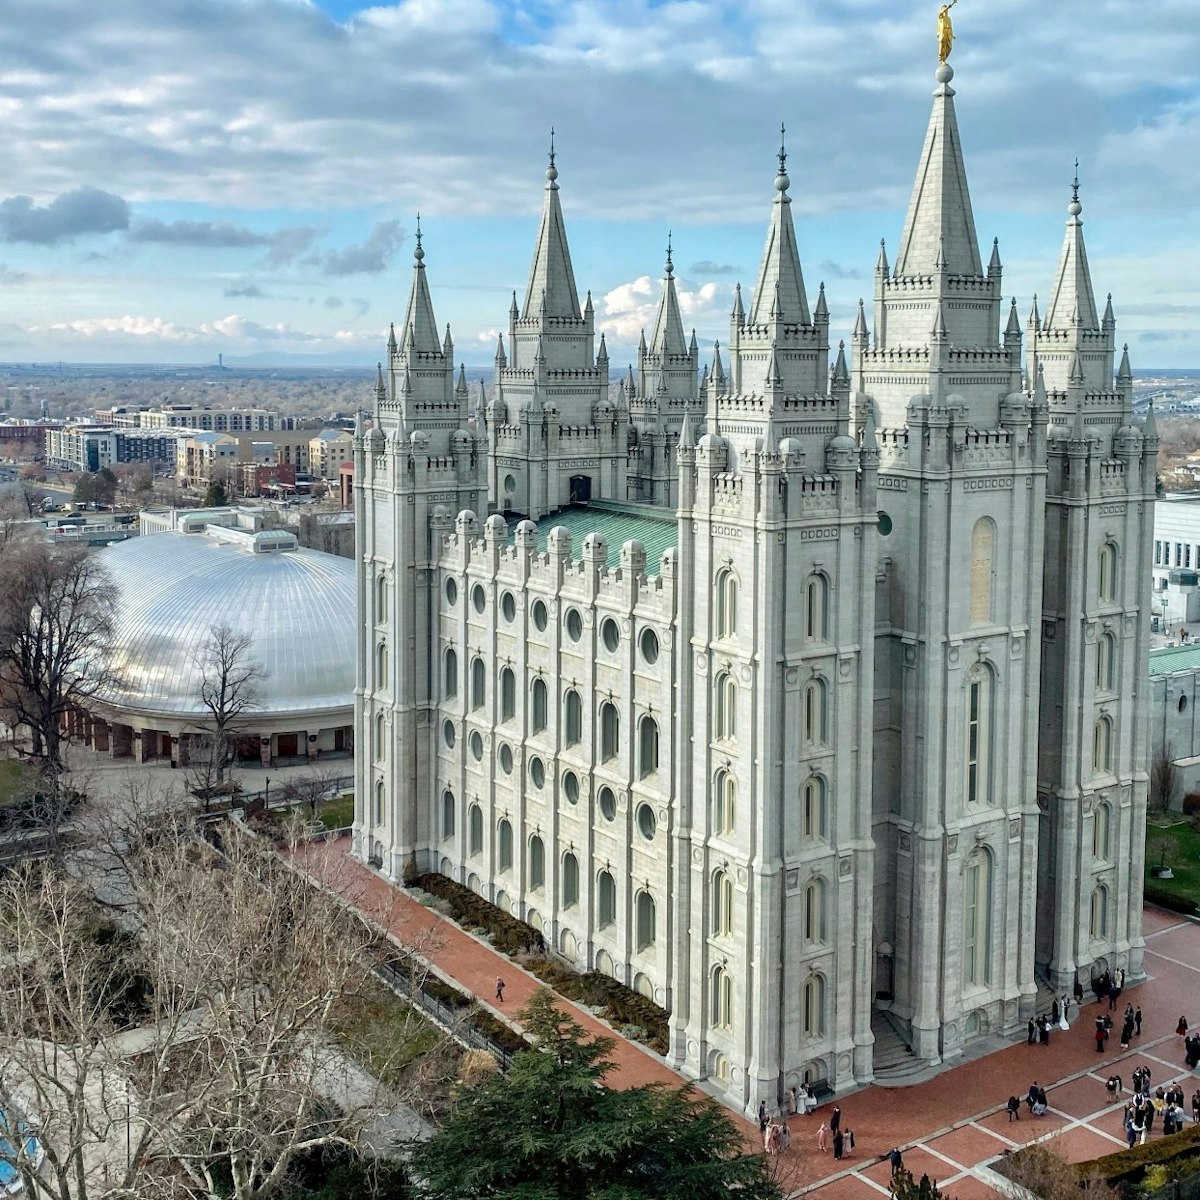 Salt Lake City cityscape with Mormon Temple, Temple Square, Utah, USA - stock photo
Salt Lake Temple
